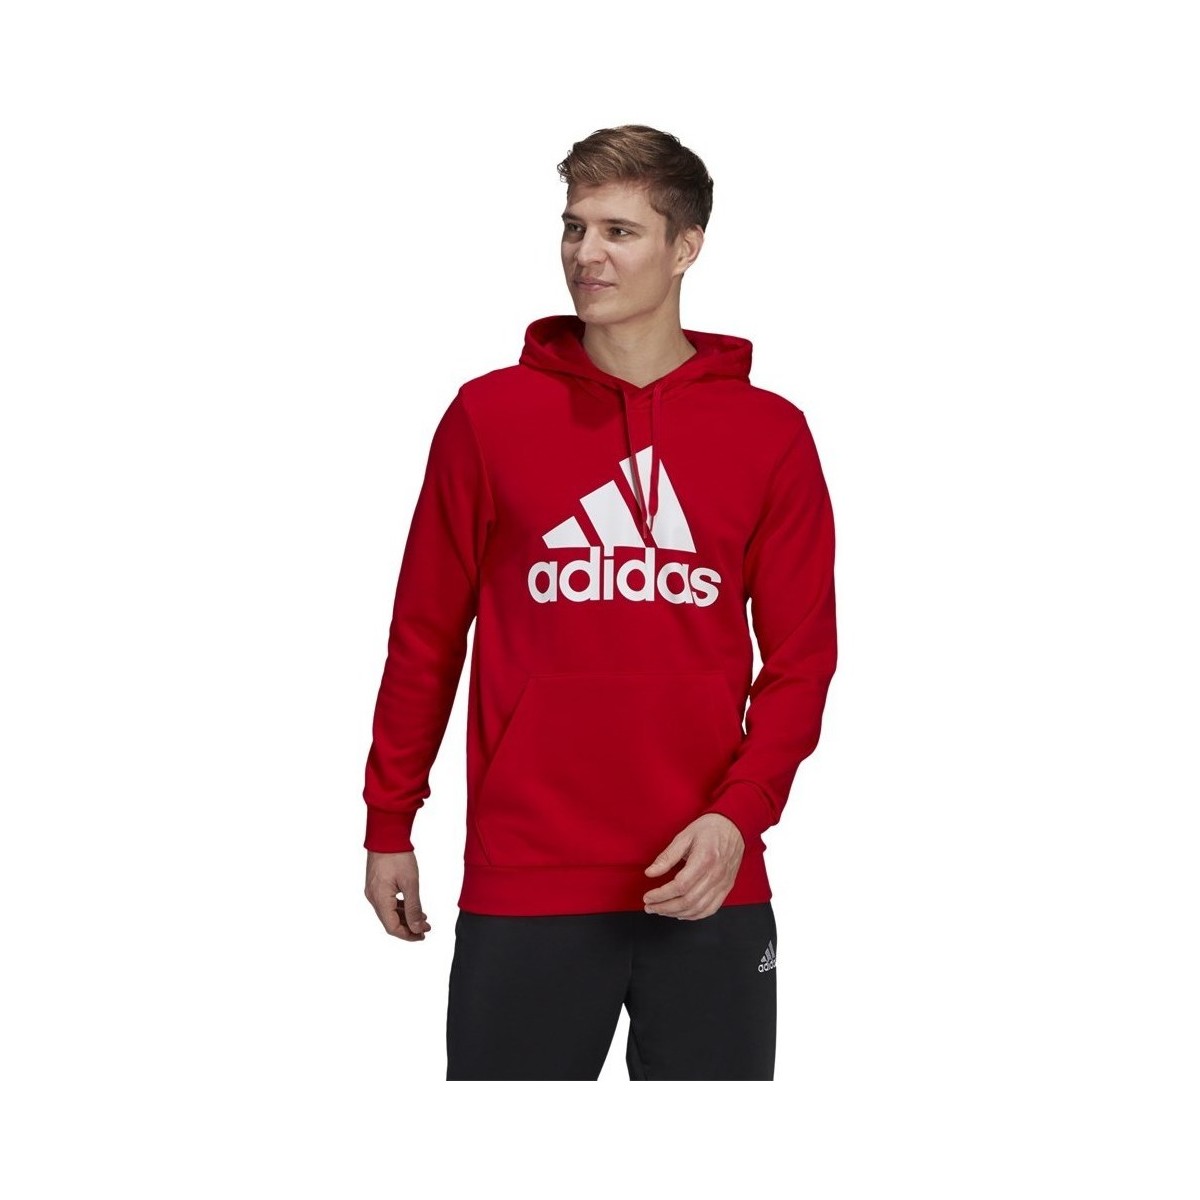 Textil Muži Mikiny adidas Originals Essentials Fleece Big Logo Hoodie Červená